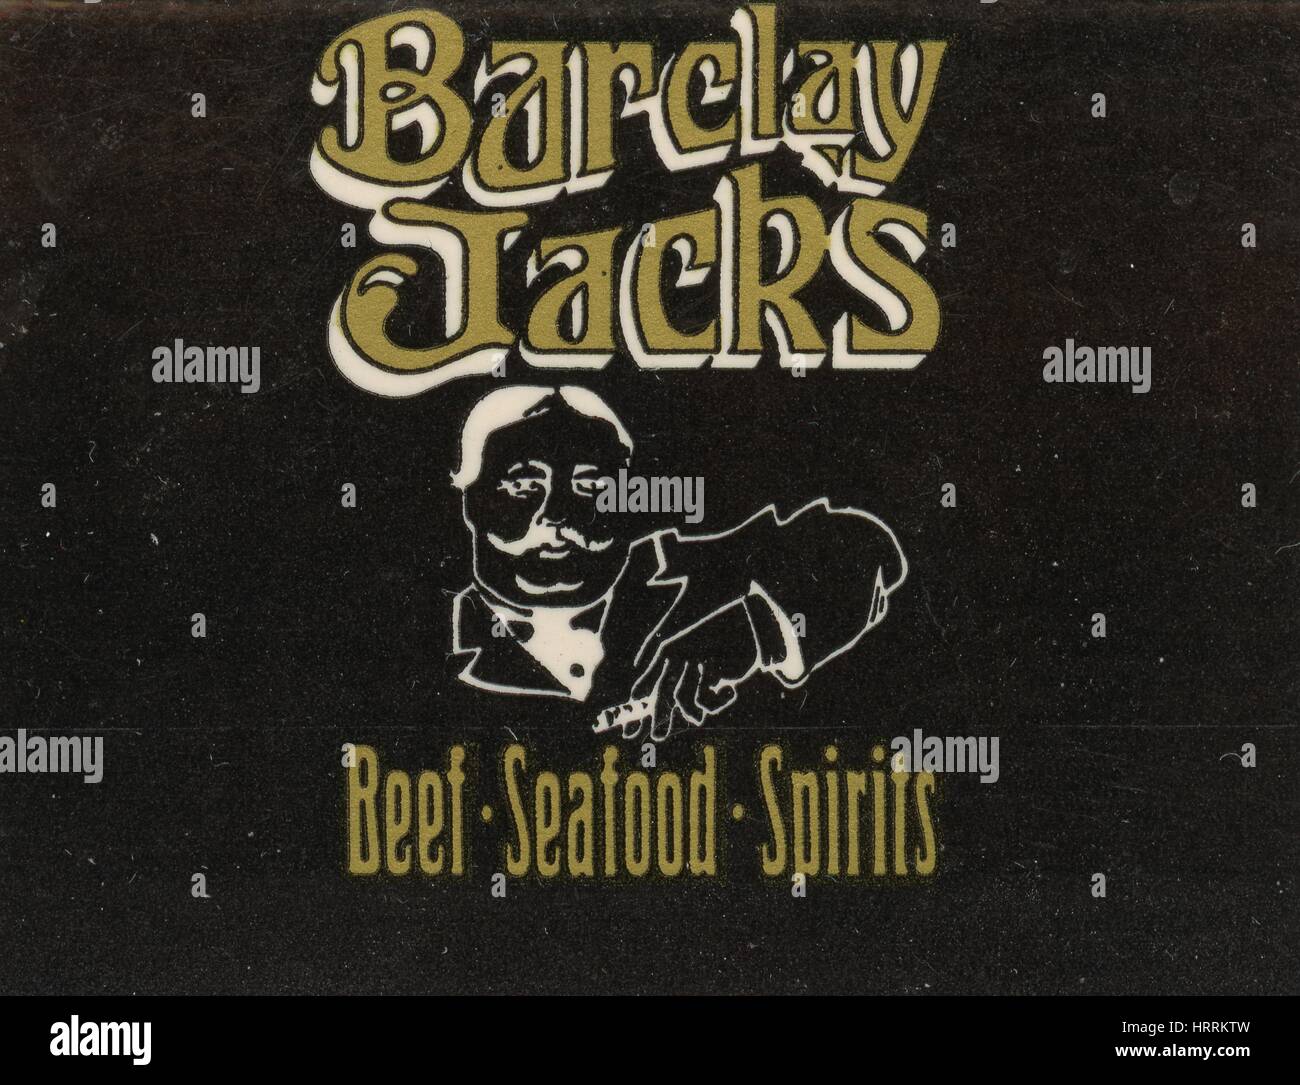 Streichholzschachtel Abdeckung für Barclay Jacks Restaurant in Oakland, Kalifornien, 1975. Stockfoto